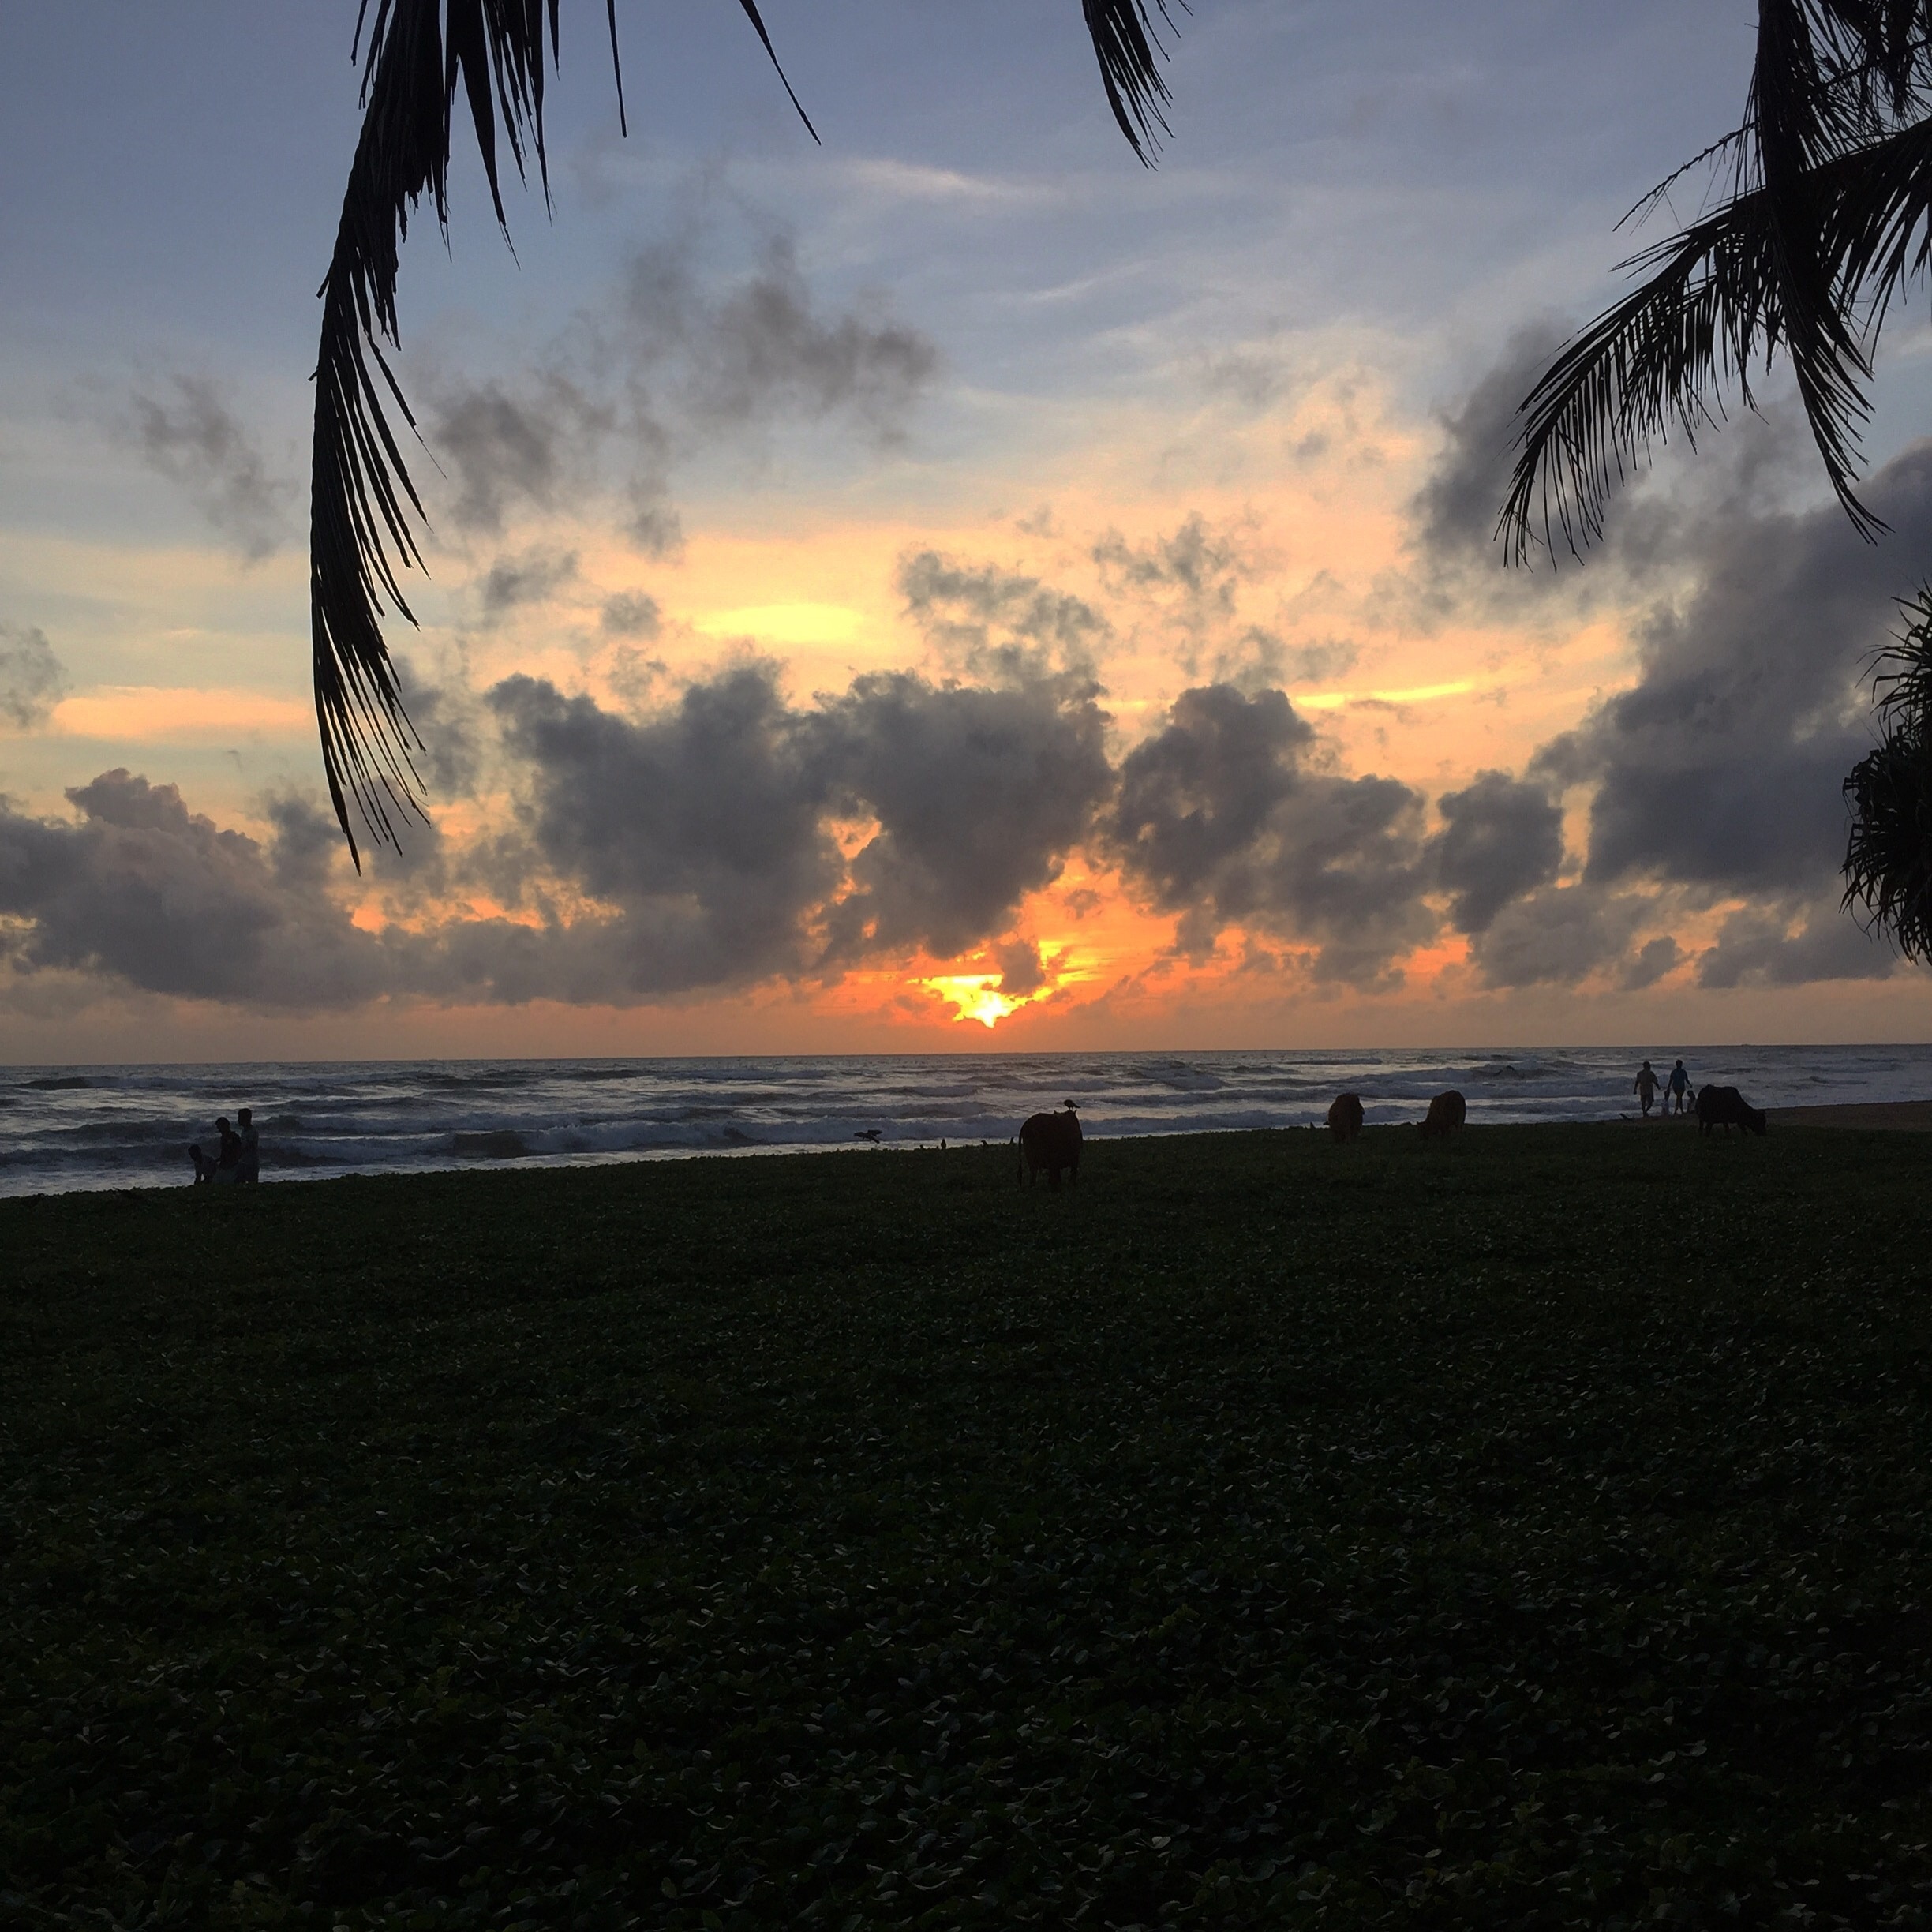 Sunset on the beach in Wadduwa Sri Lanka 